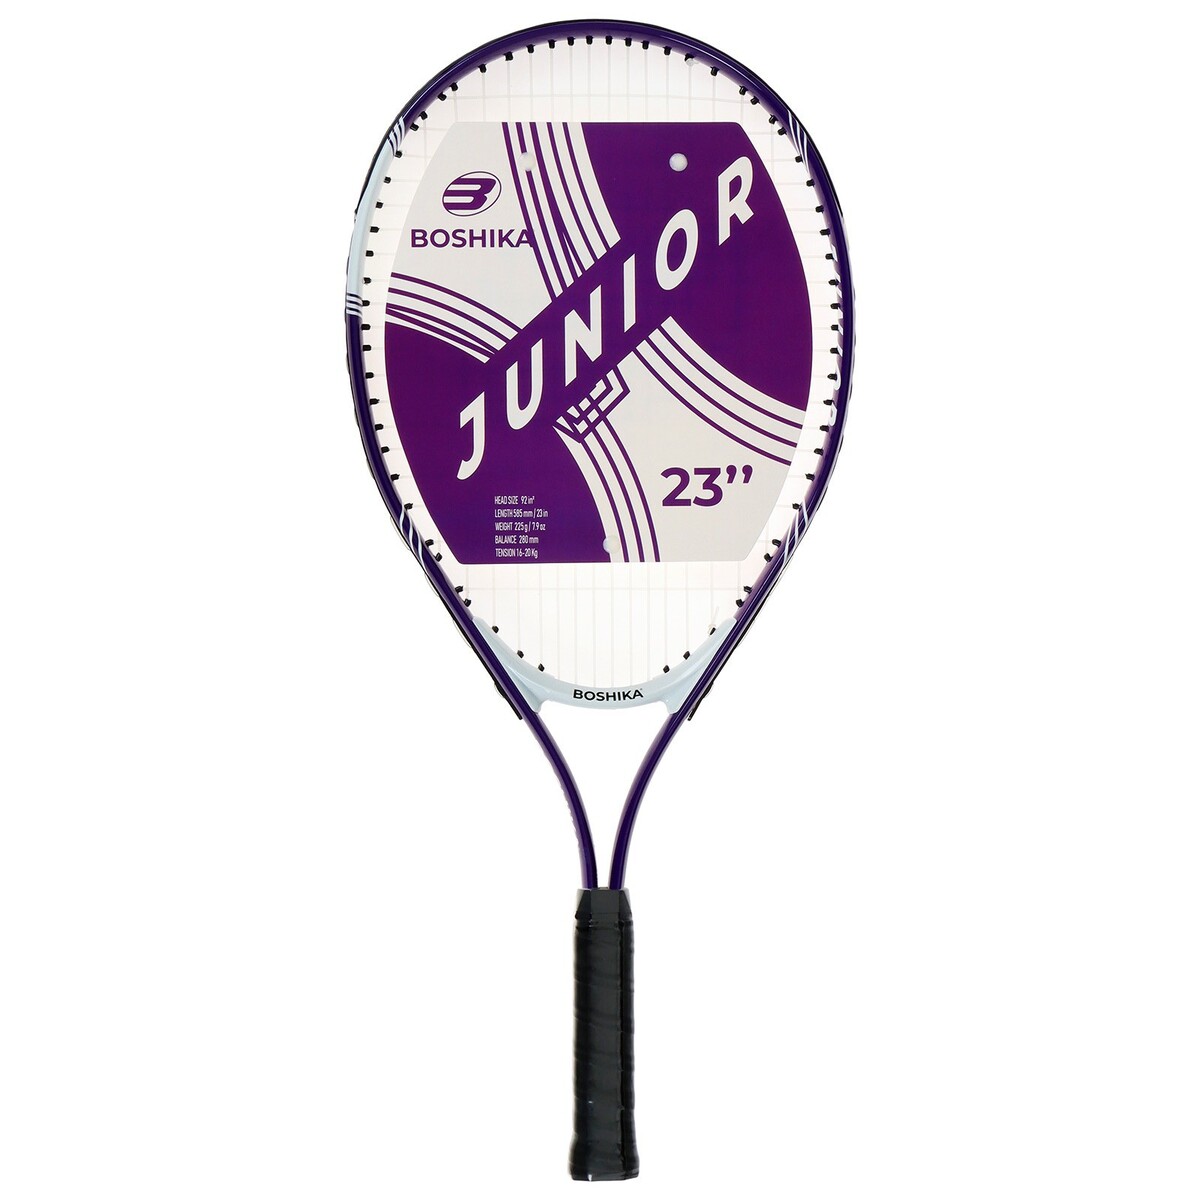 Ракетка для большого тенниса детская boshika junior, алюминий, 23'', цвет фиолетовый ракетка donic champs 150 270216